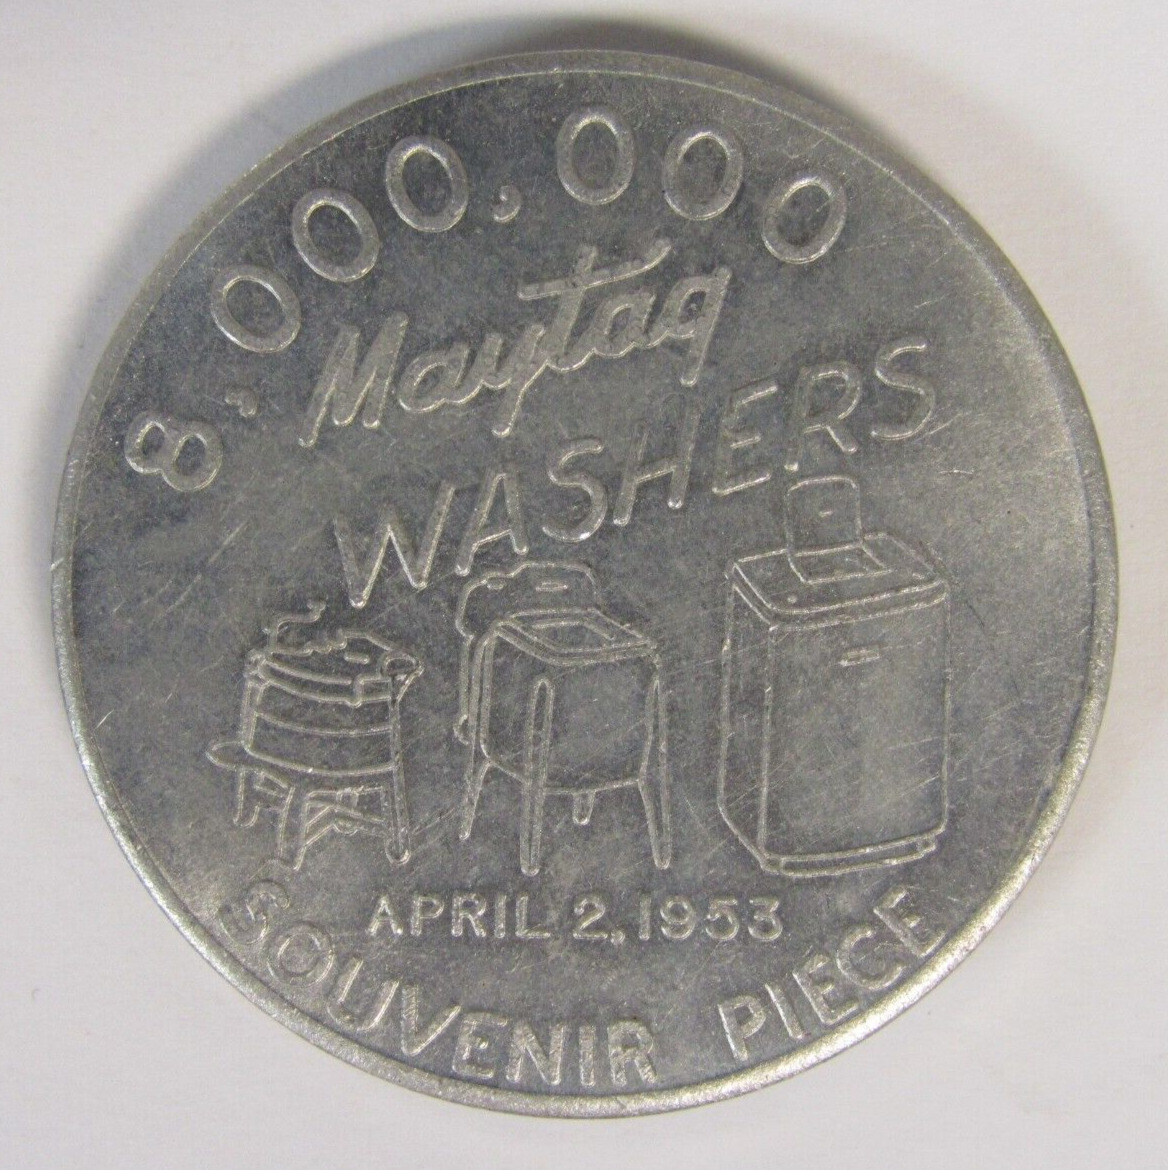 Newton Iowa Maytag 60th Anniversary Token 8,000,000 Washers 1953